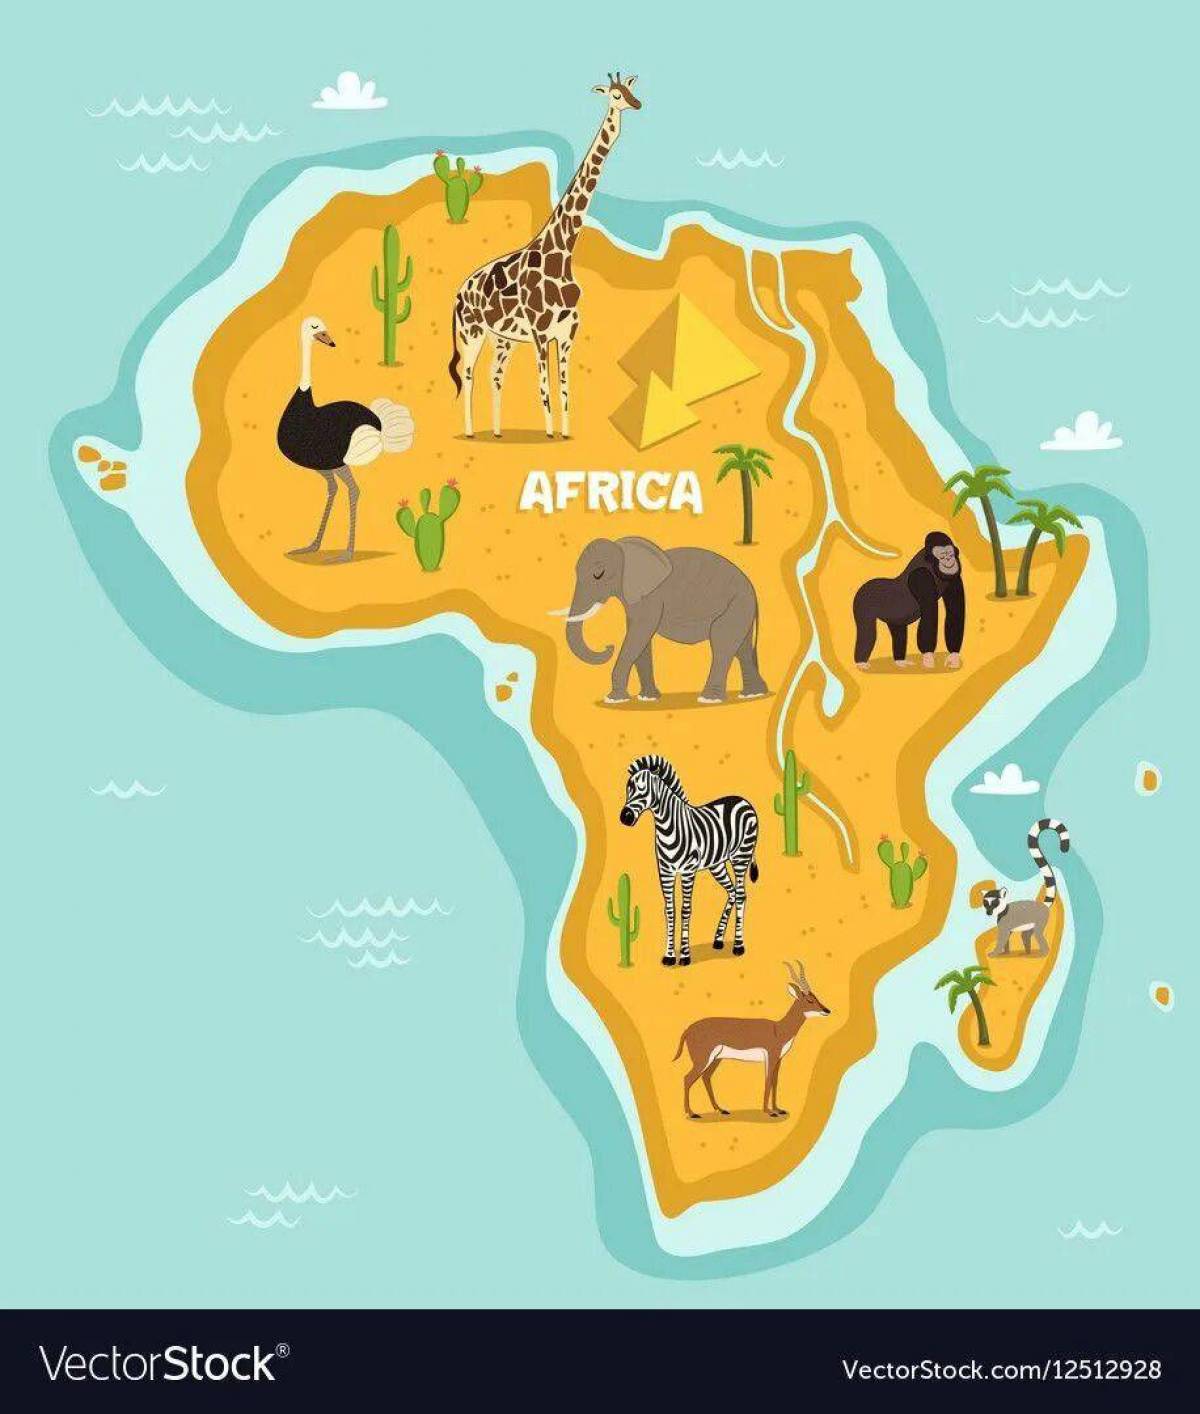 Где живет жираф на каком материке. Африка карта для детей. Животные Африки для детей. Континент Африка для детей. Карта Африки картинка для детей.